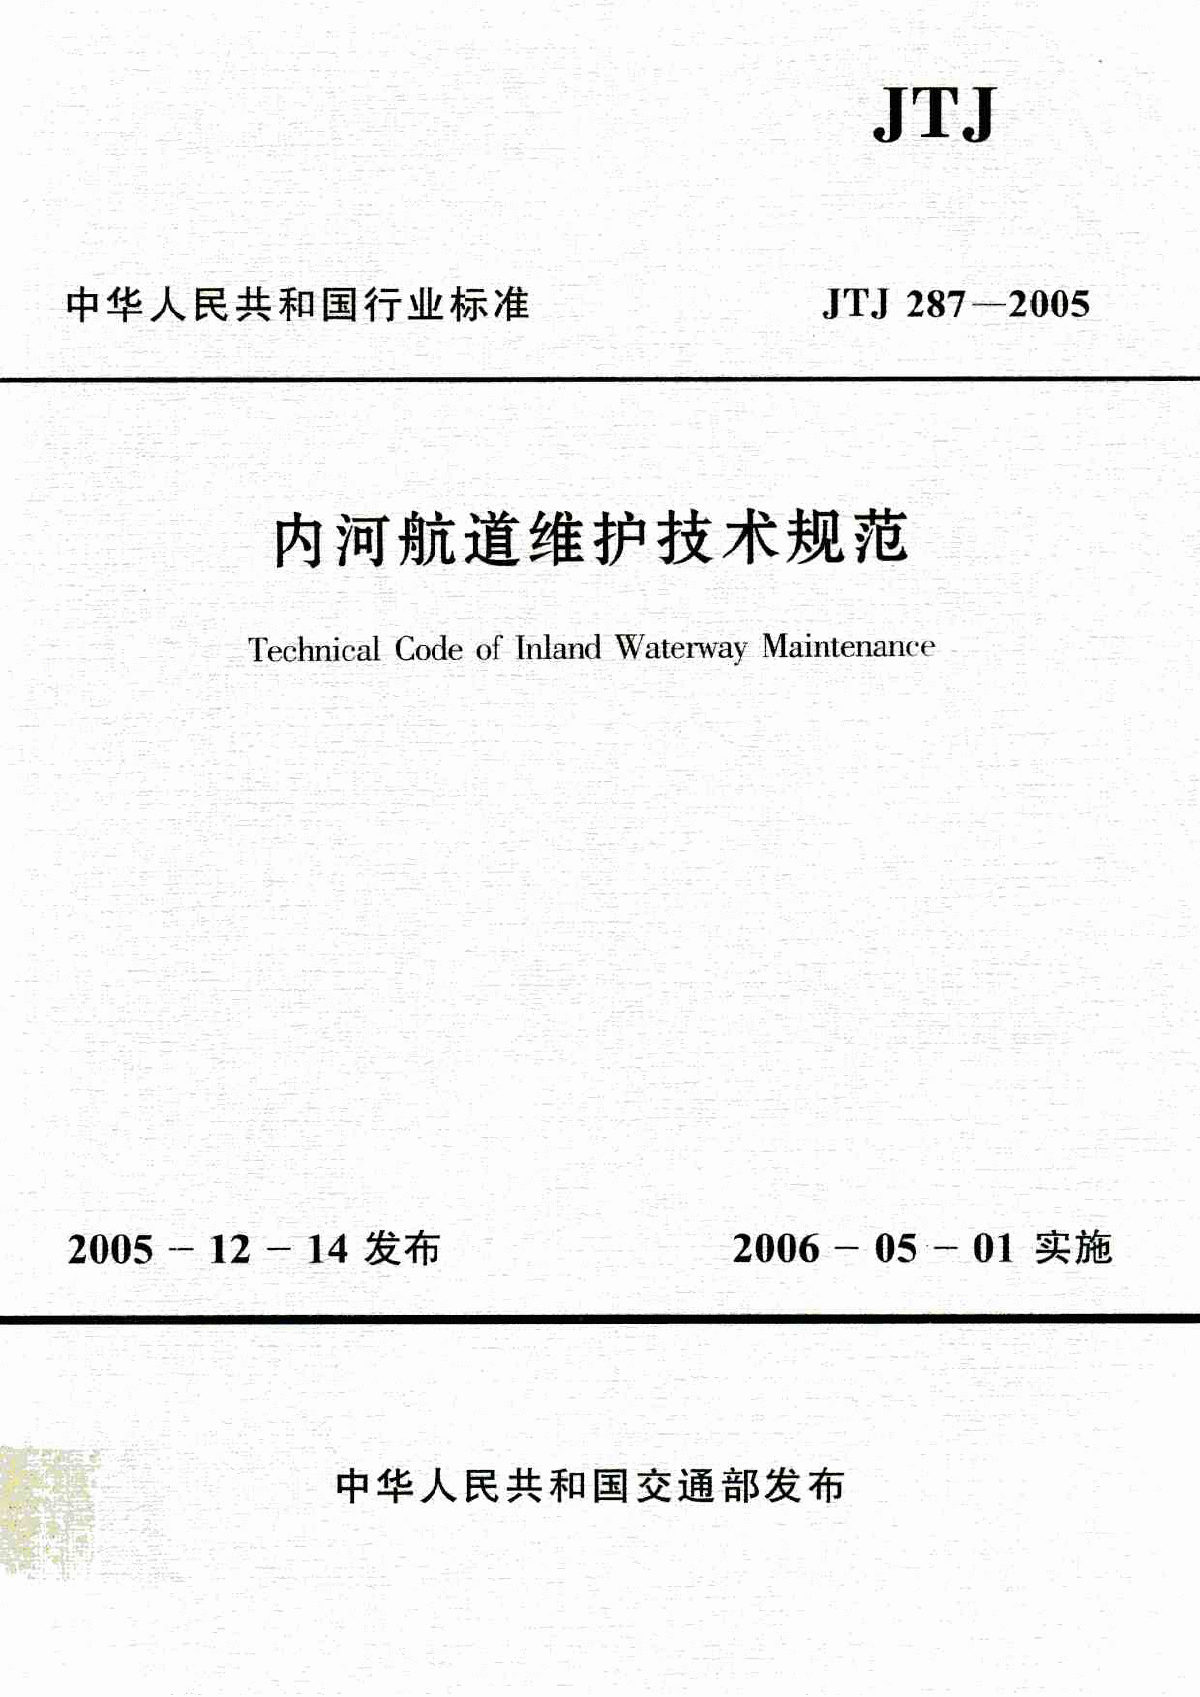 《内河航道维护技术规范》(JTJ287-2005)